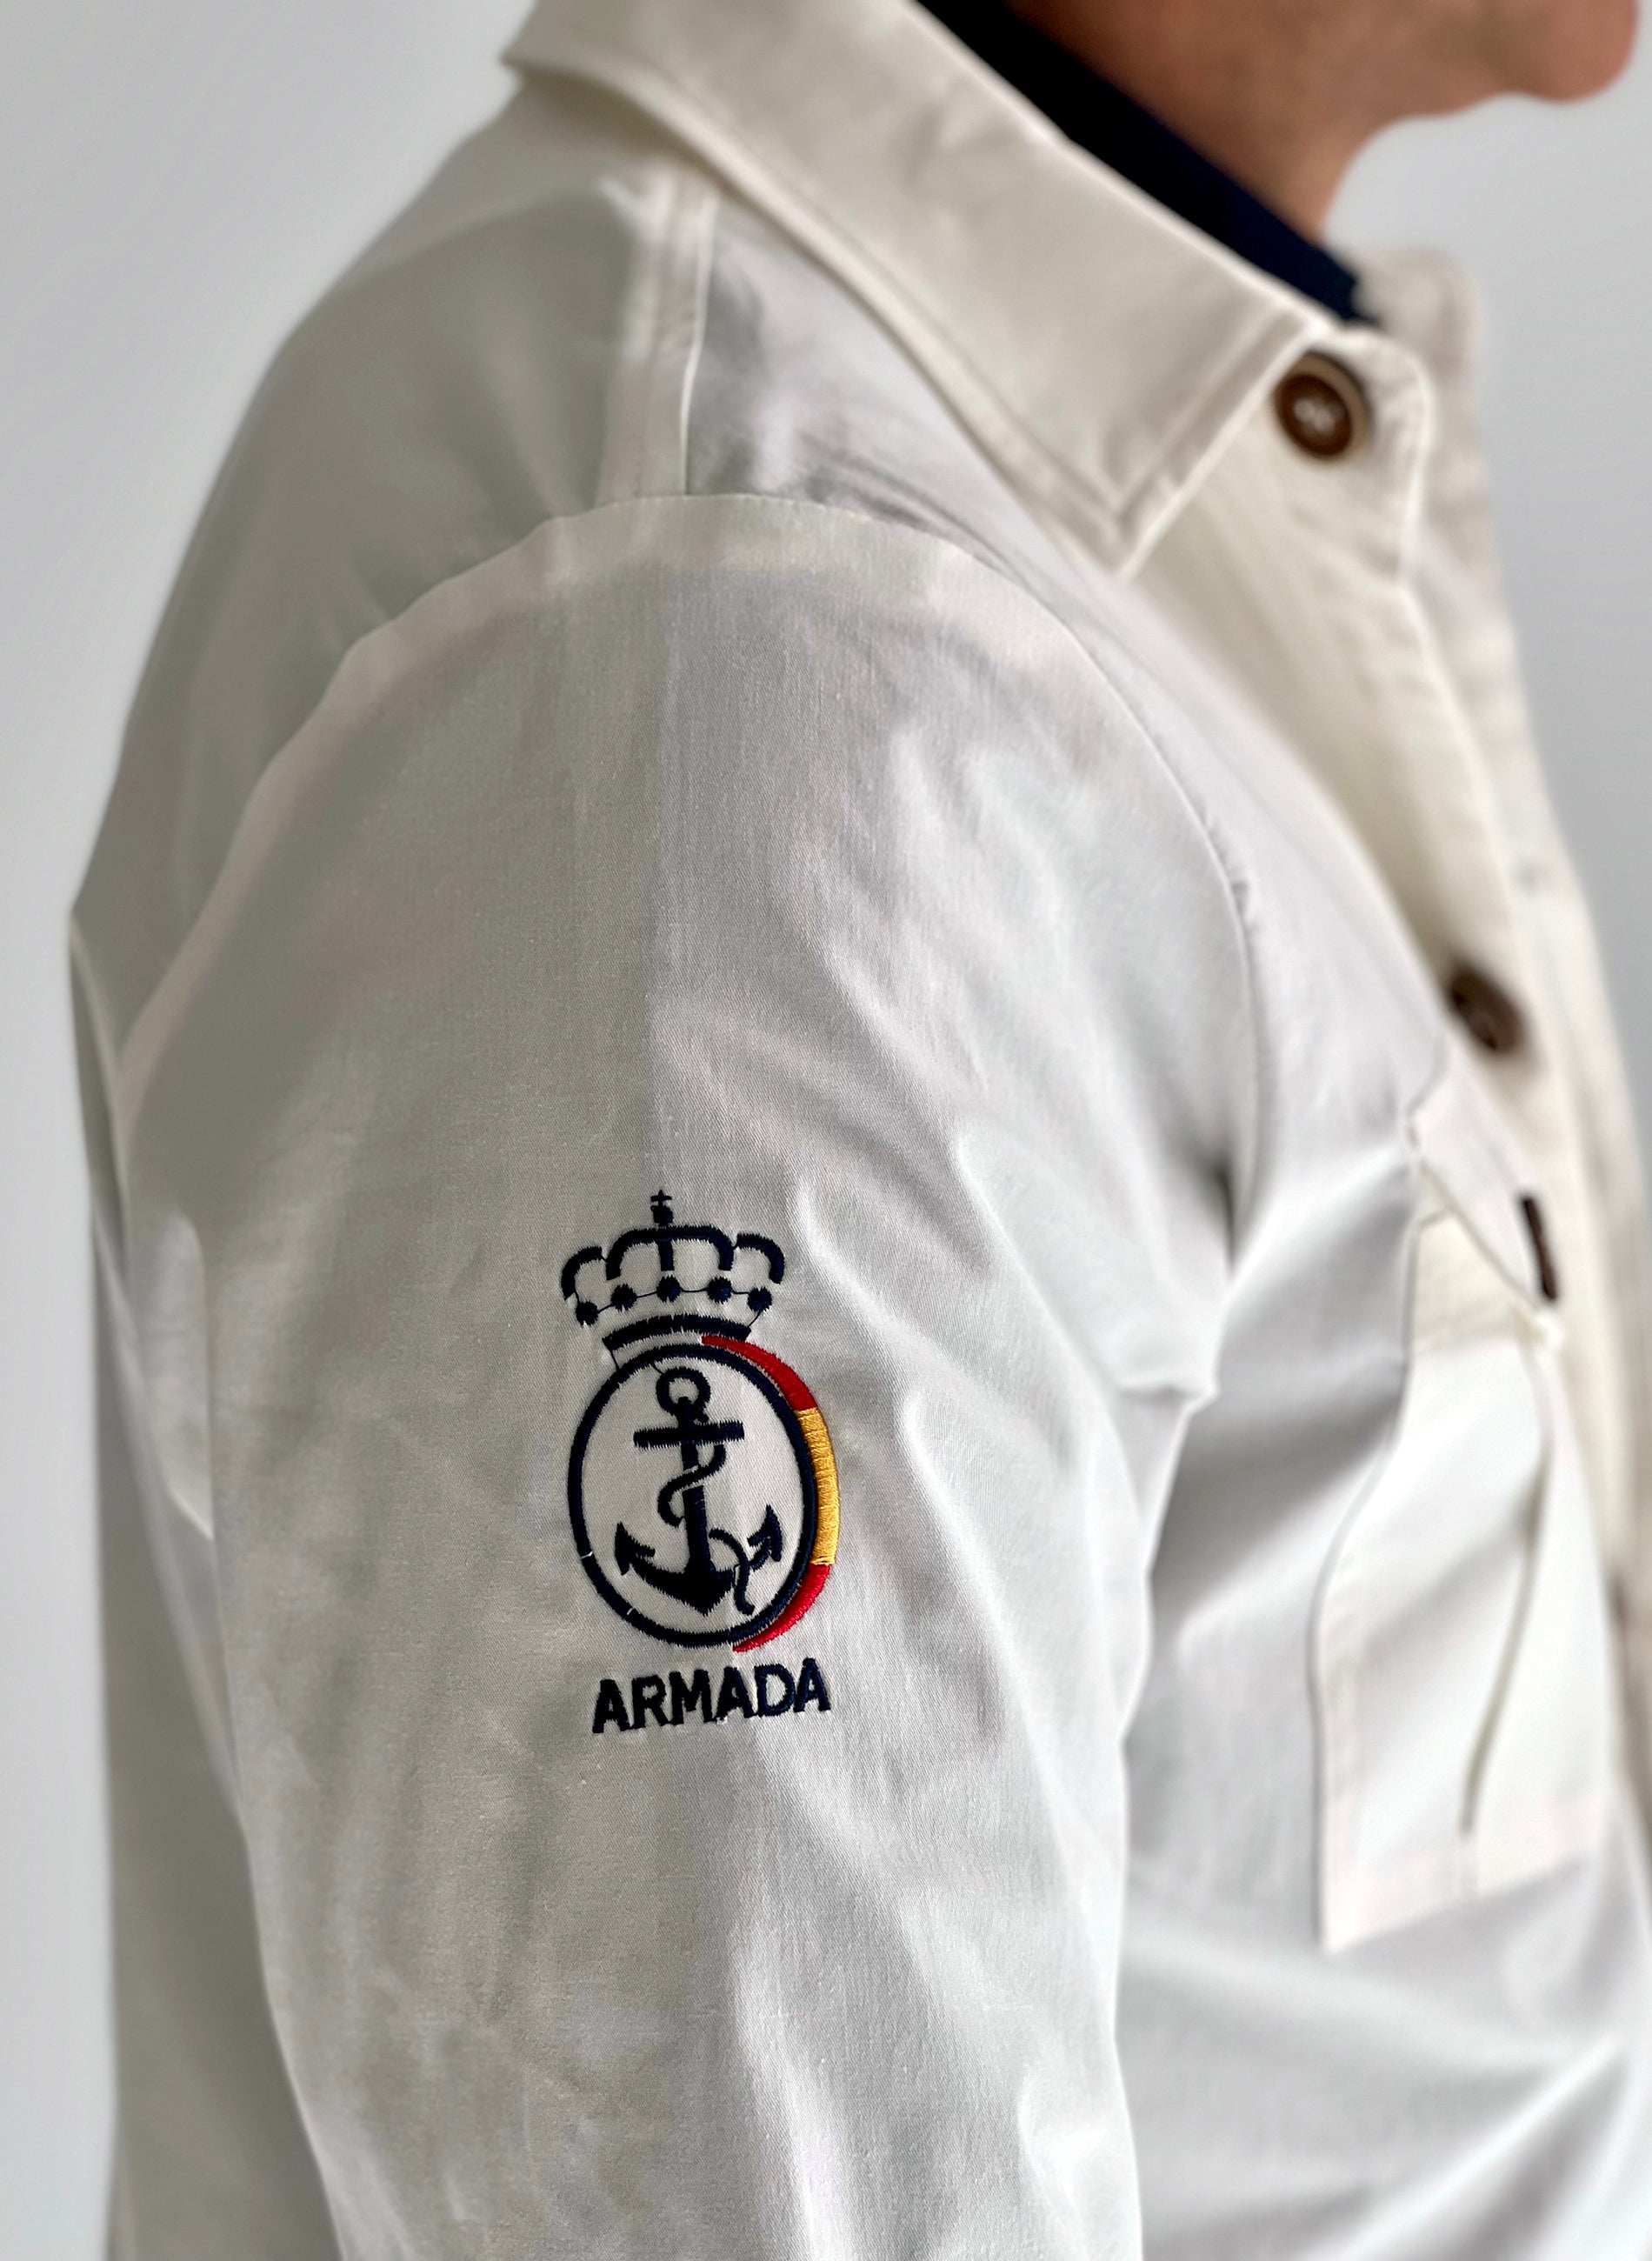 White Saharan Jacket Spanish Navy Man